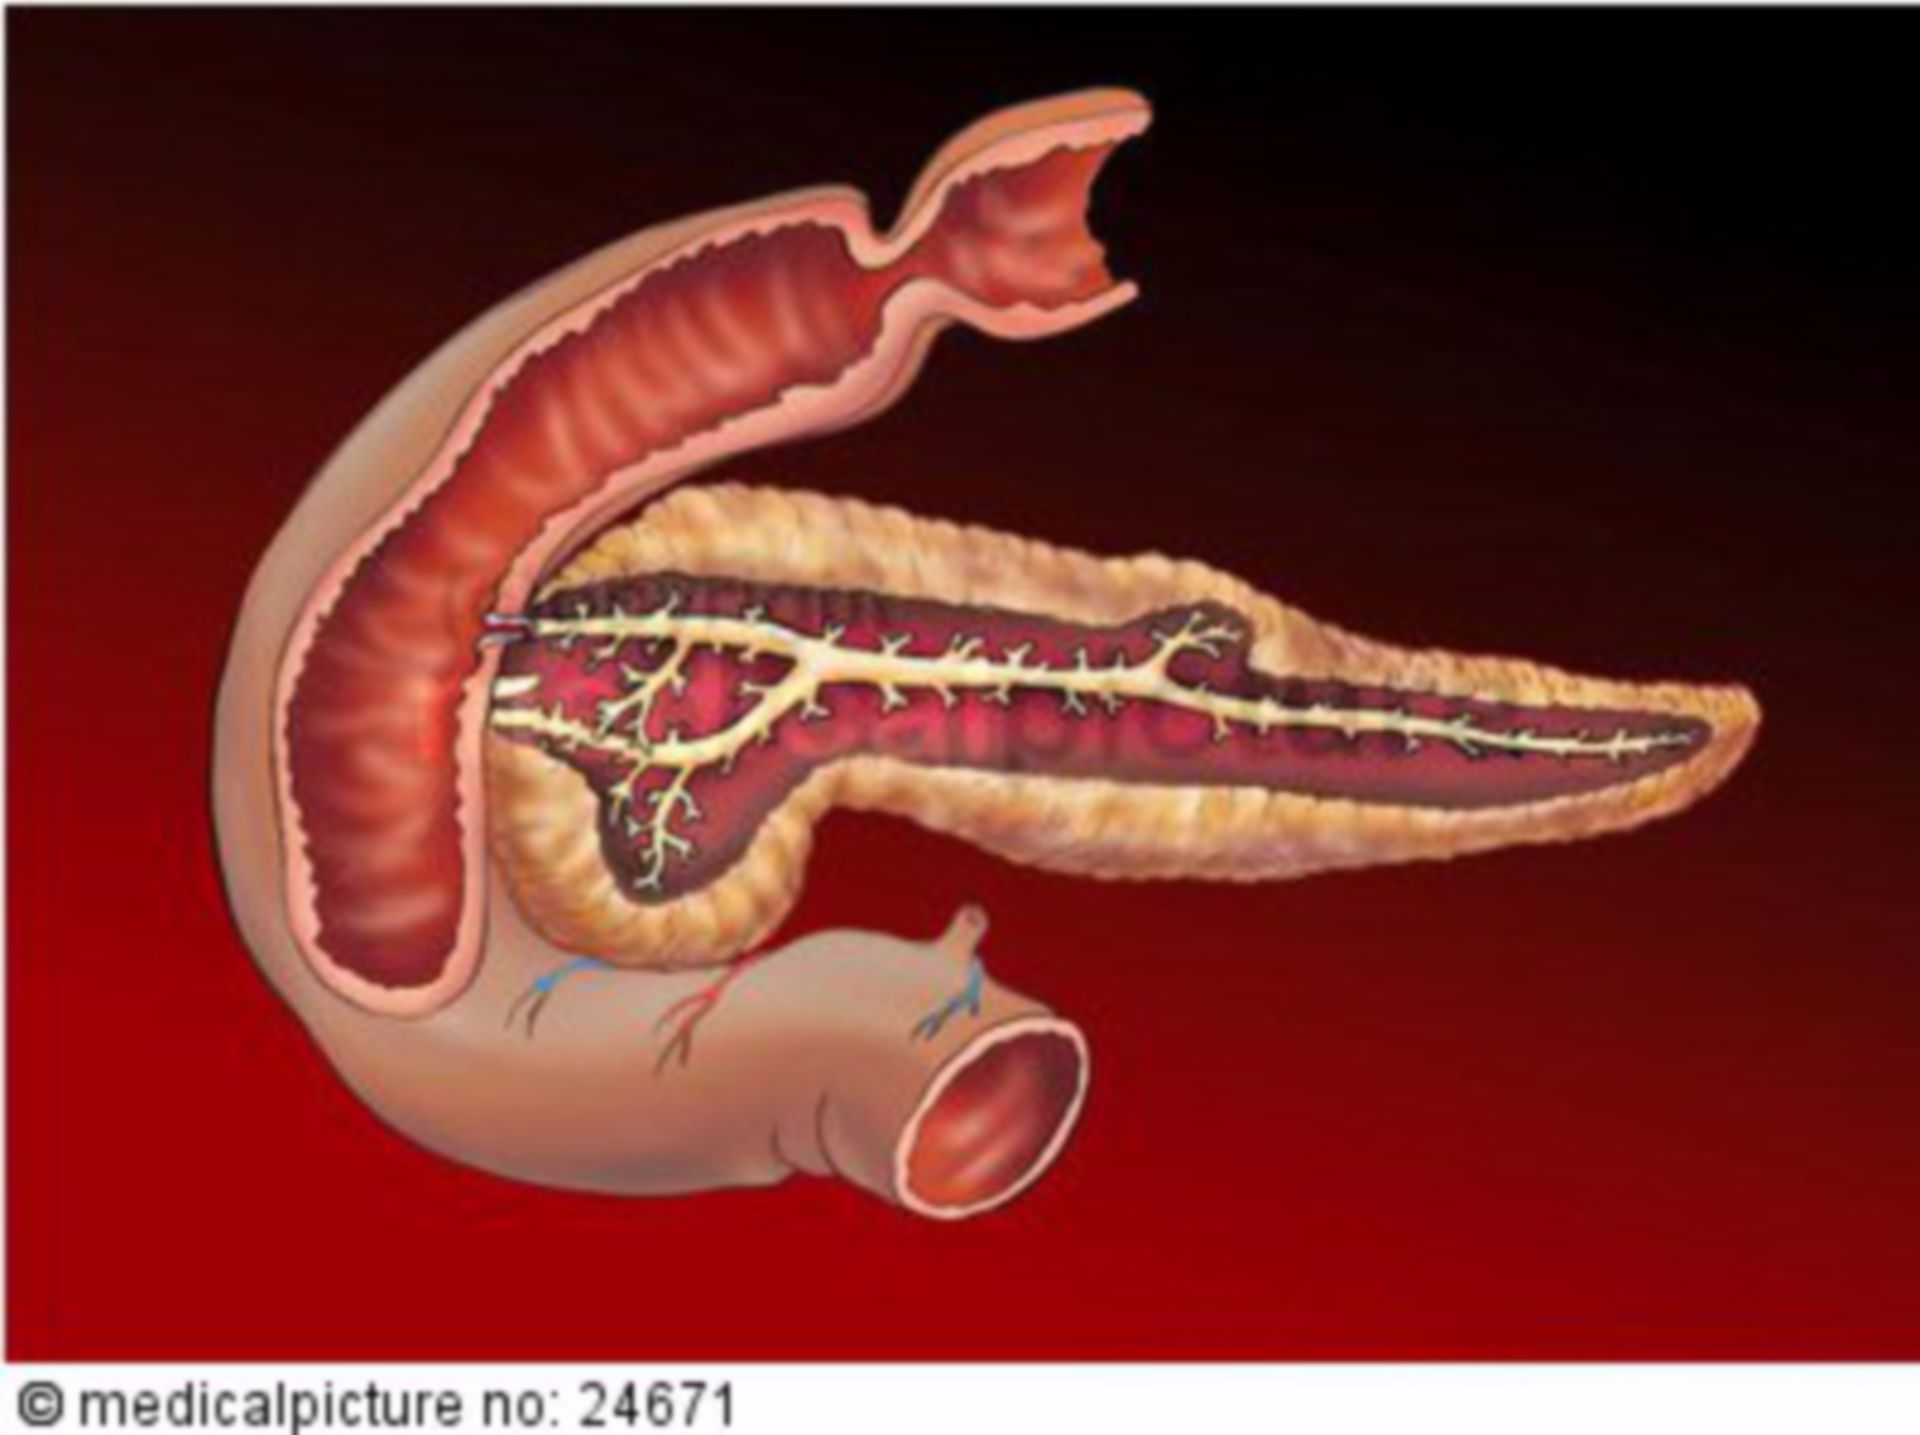 Human pancreas